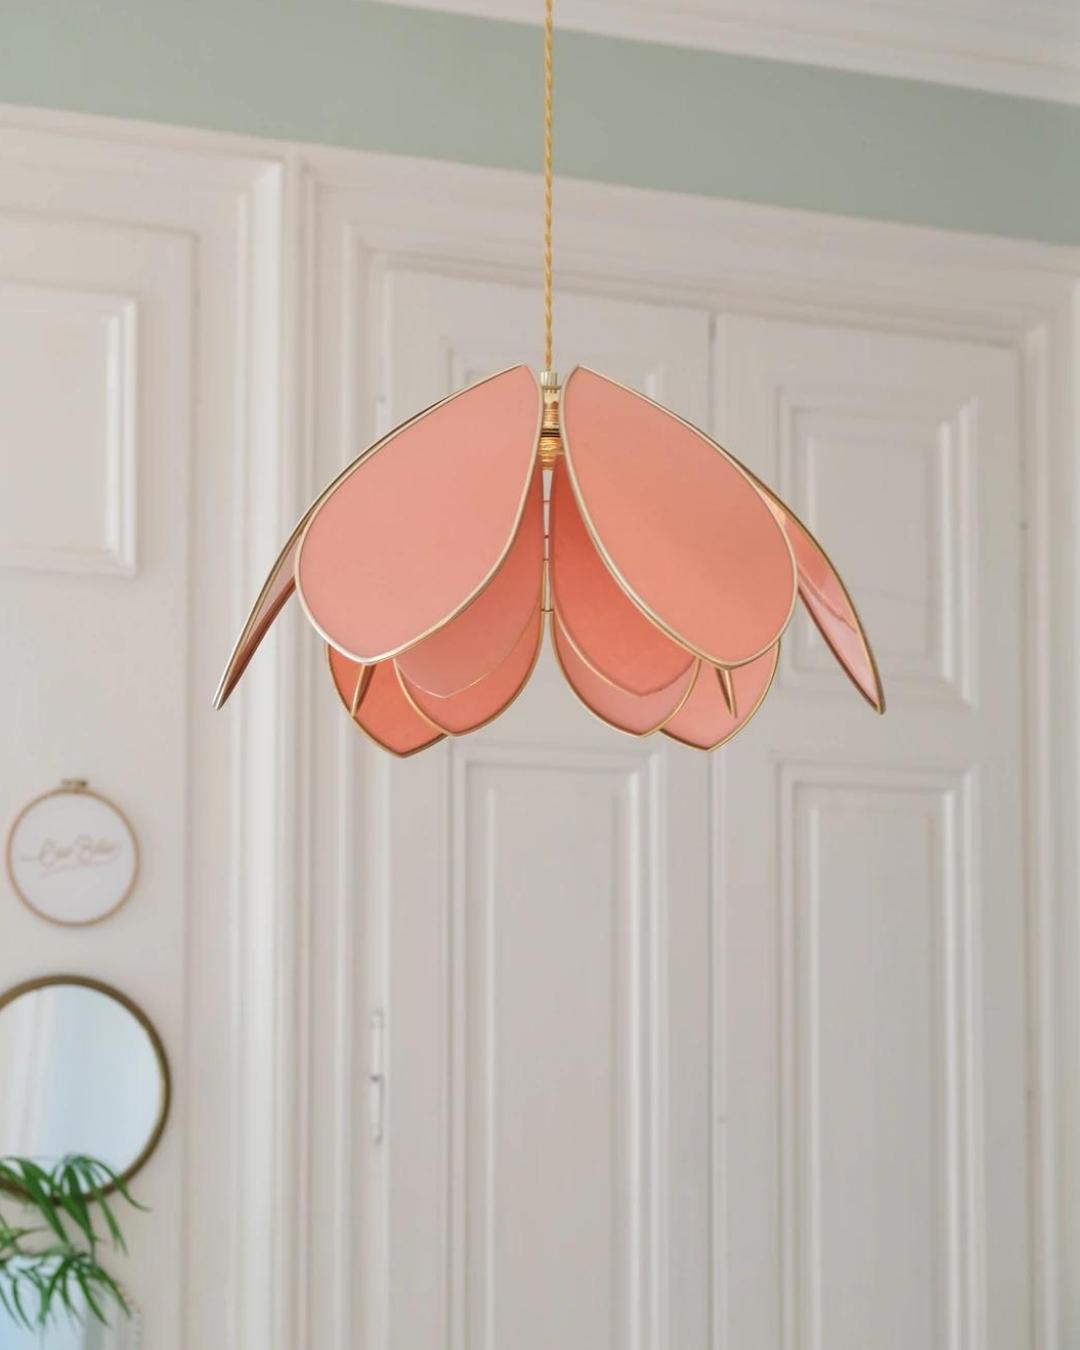 Petal lampshade in pink